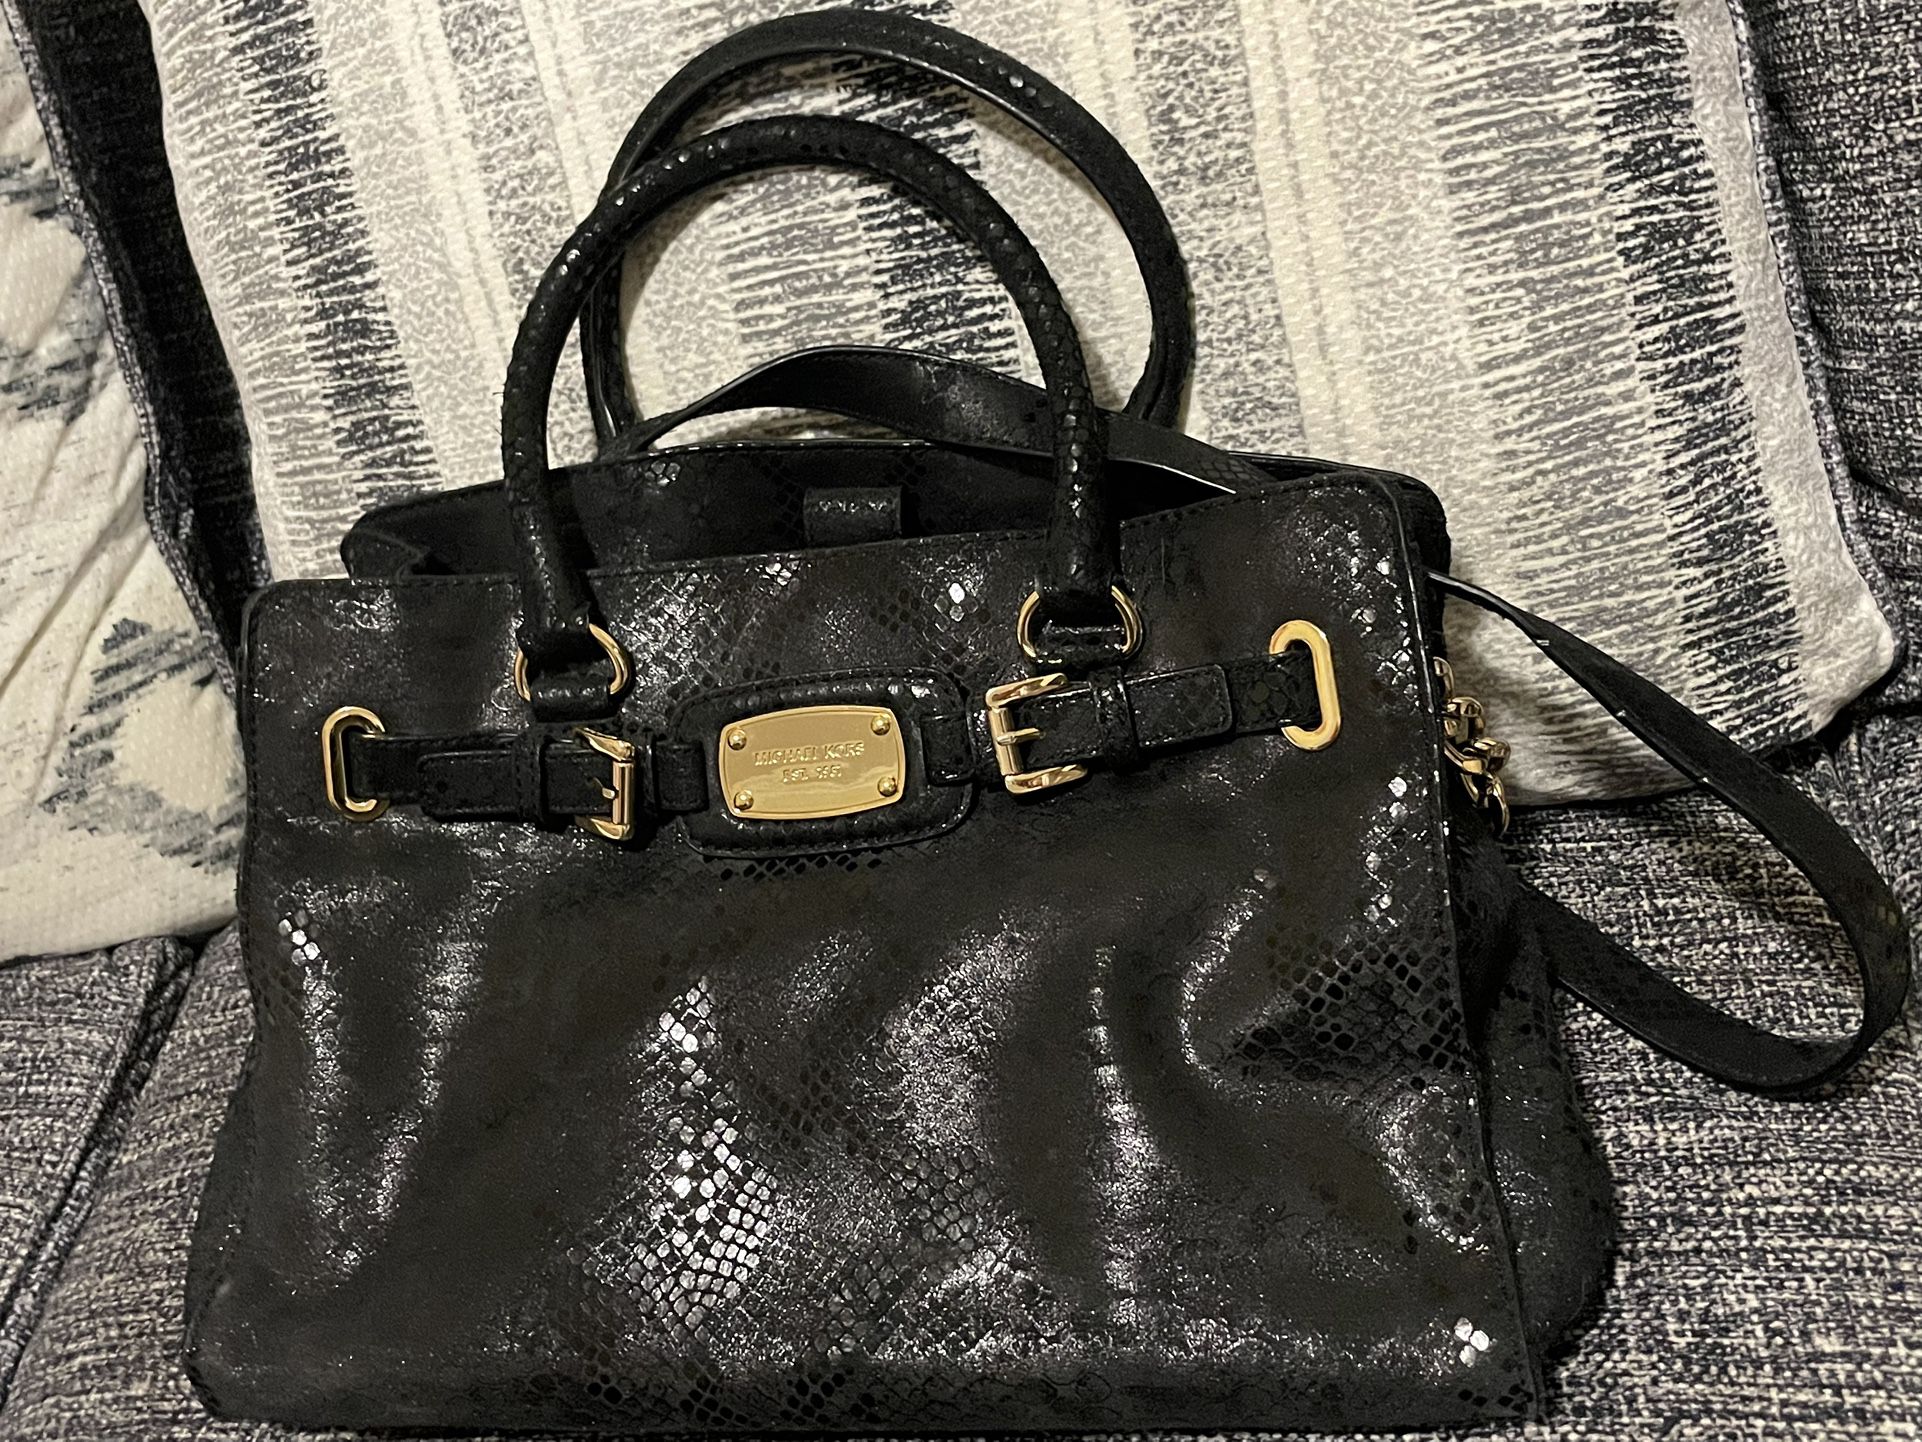 Michael Kors Black Snakeskin Leather Handbag